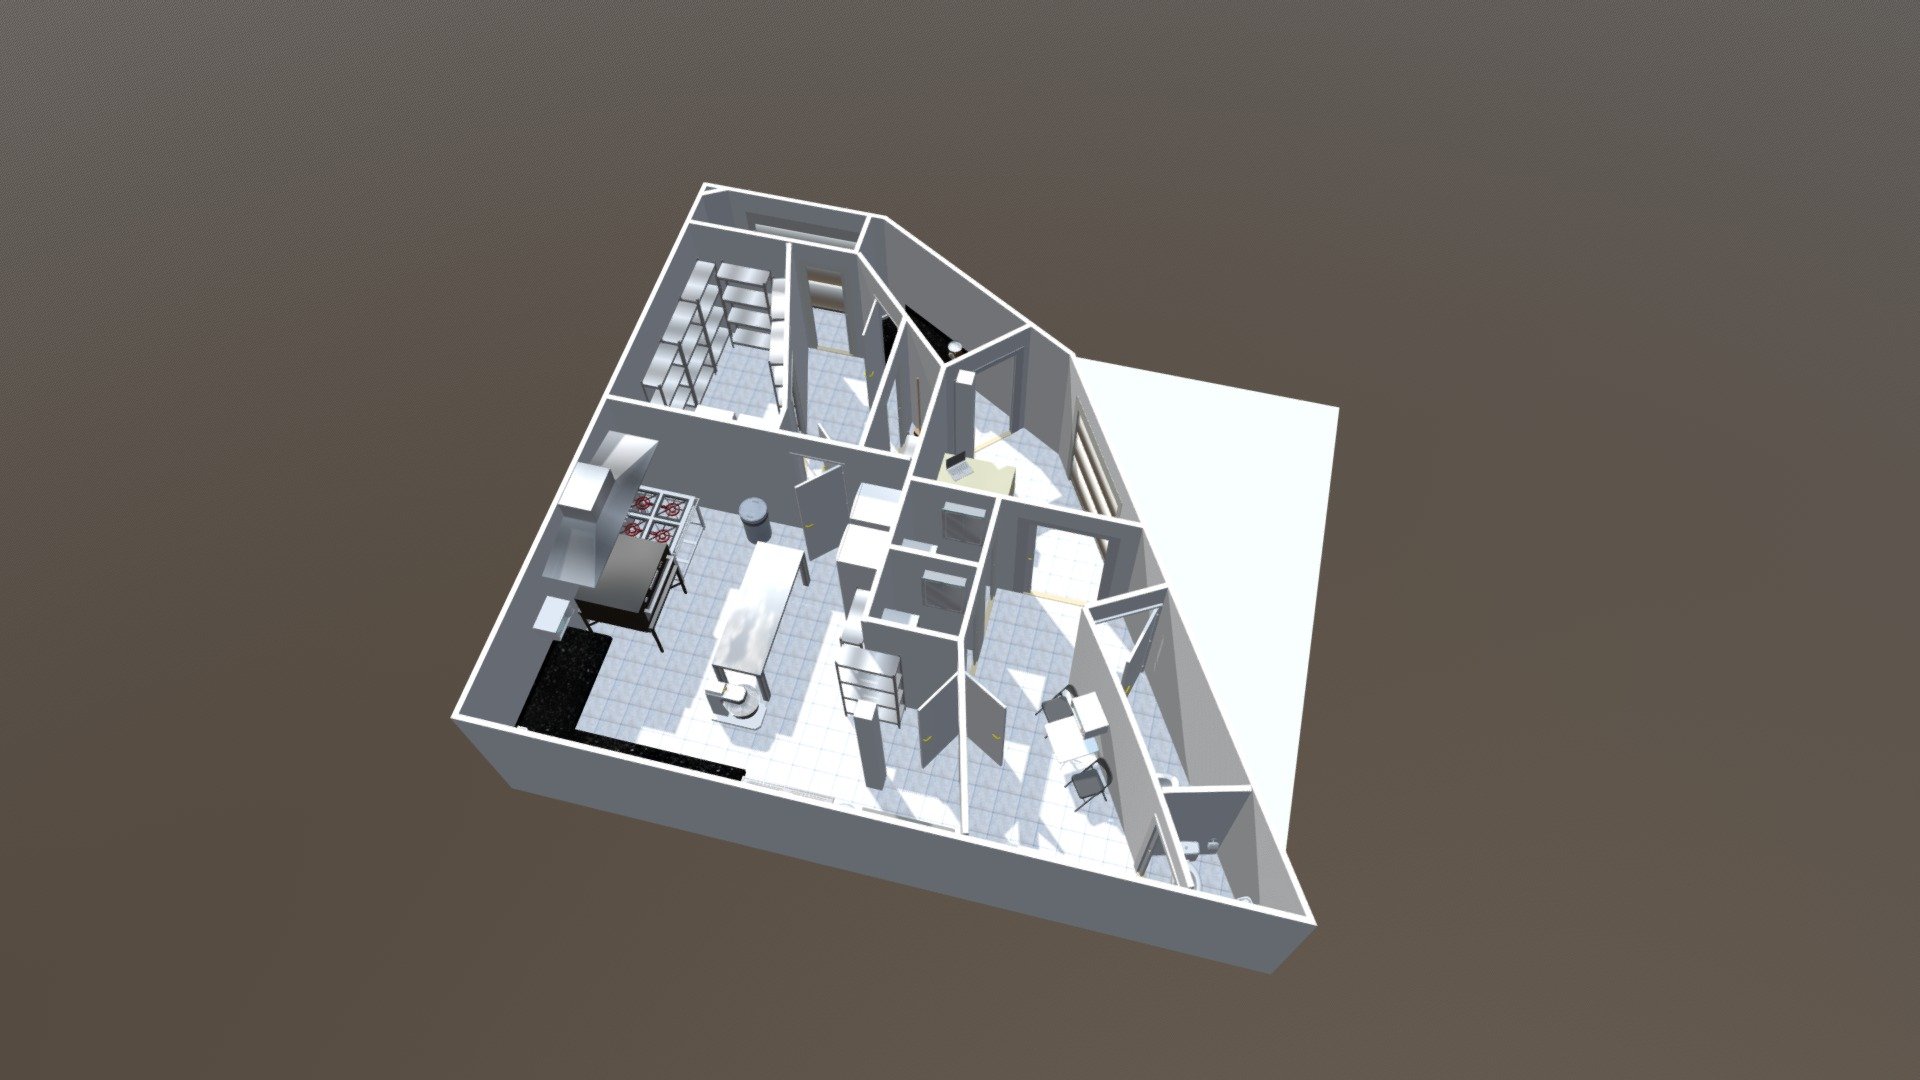 Cozinha Cafeeiro 3D-002 - 3D model by iszitech [d7cec0d] - Sketchfab